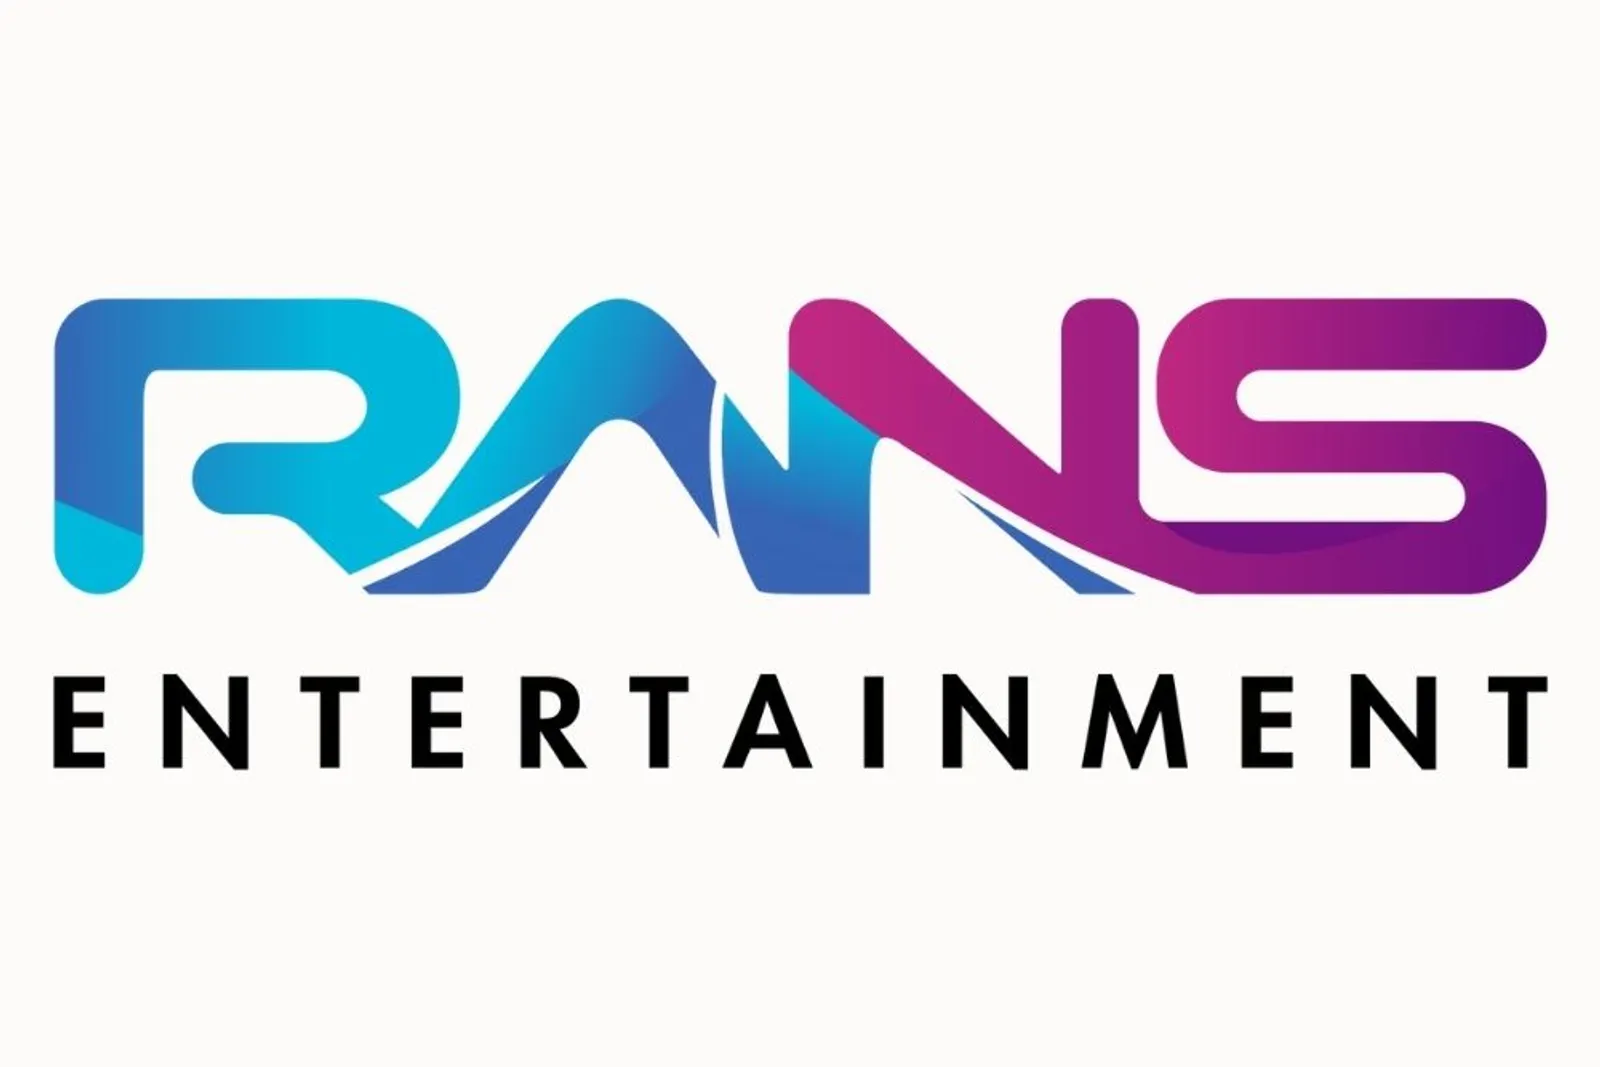 RANS Entertainment Buka Lowongan Kerja, Ini Kriteria dan Posisinya!